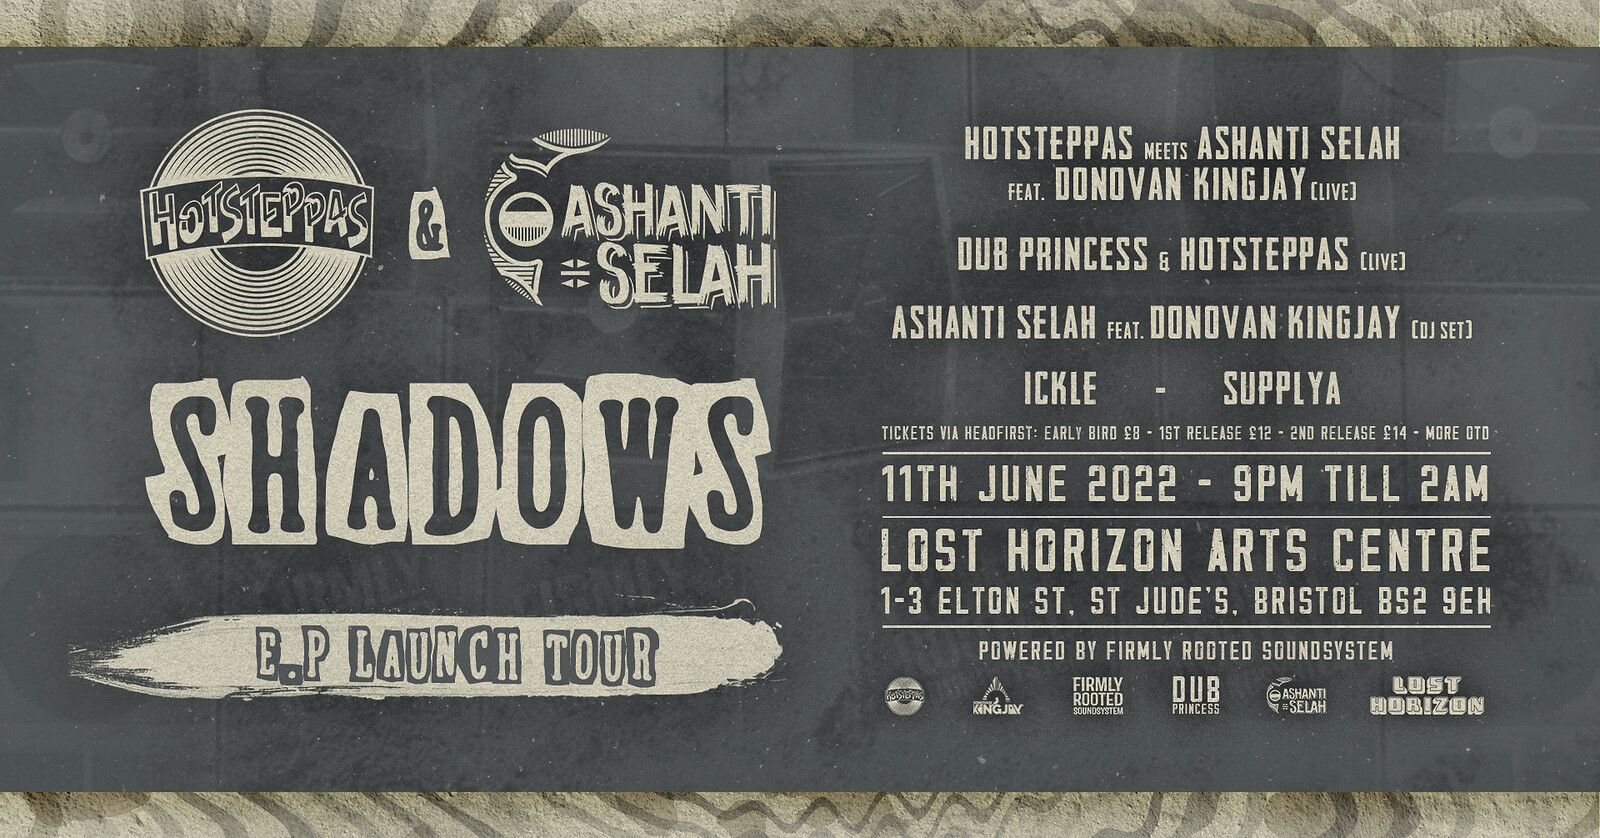 Hotsteppas meets Ashanti Selah 'Shadows' EP Launch at Lost Horizon